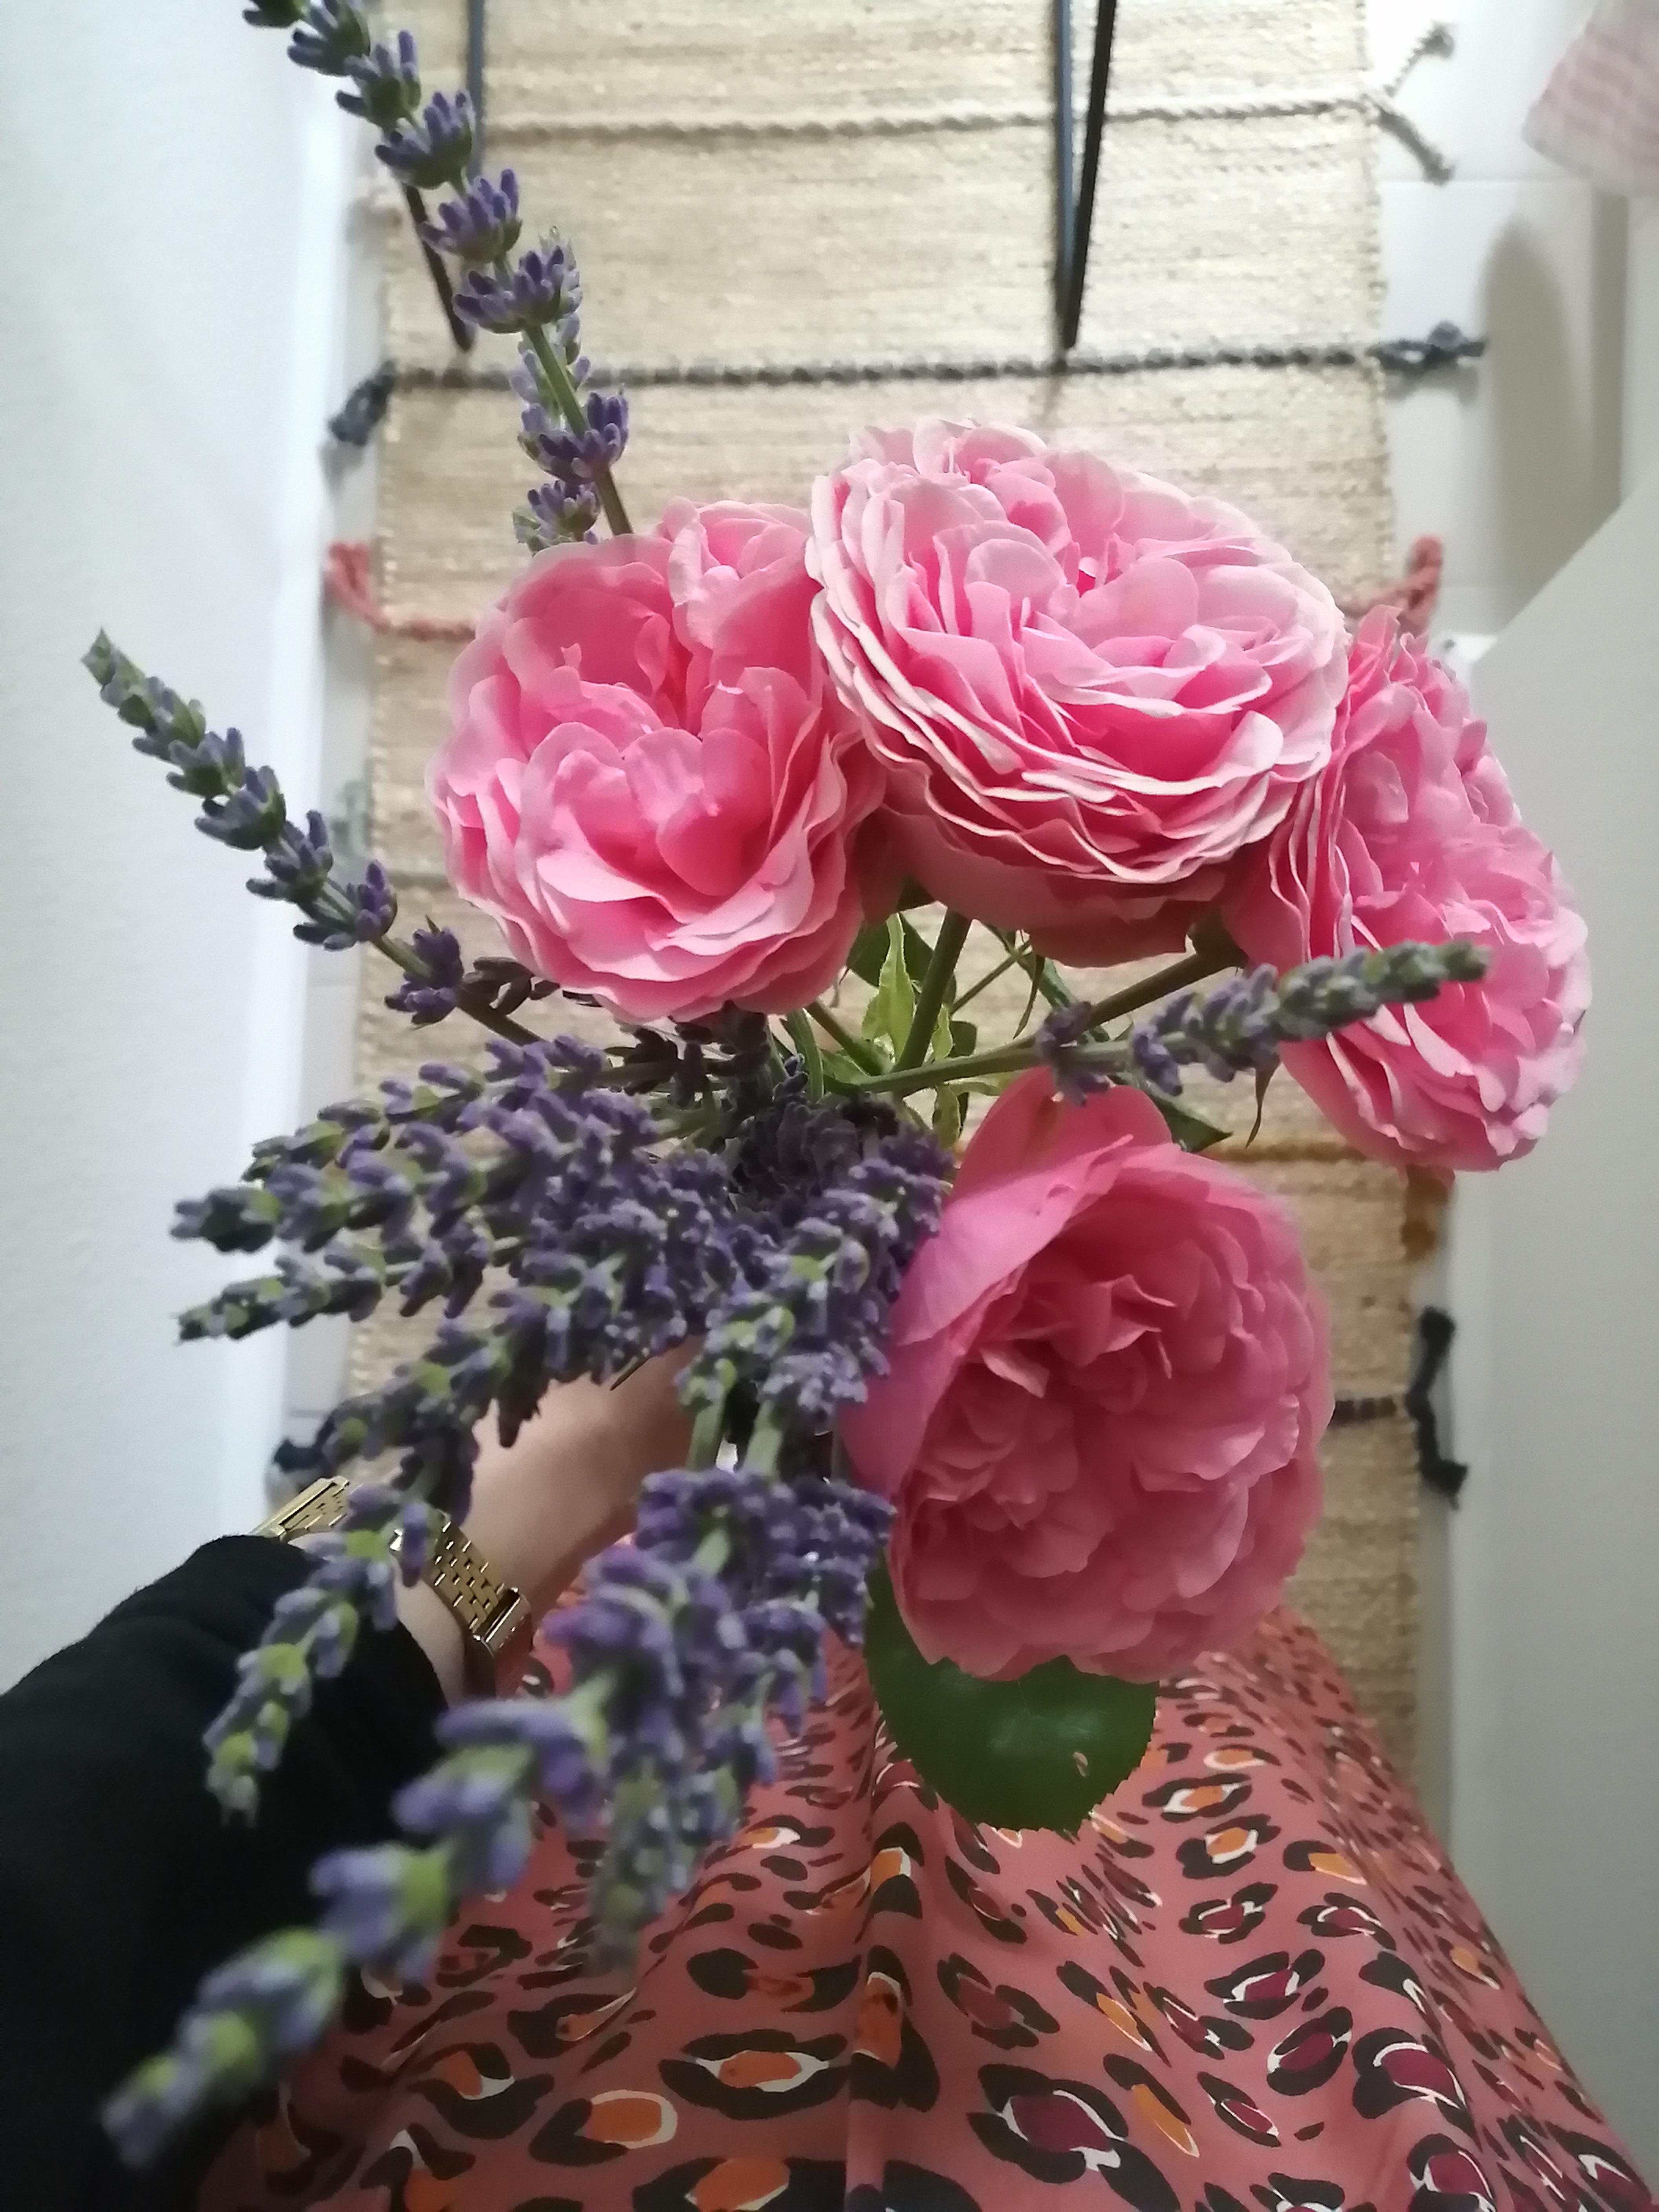 Gartenblumen #sommerinberlin #rosen #lavendel #eineküchevollerblumen #novelberlin #hatdieschönstenröcke